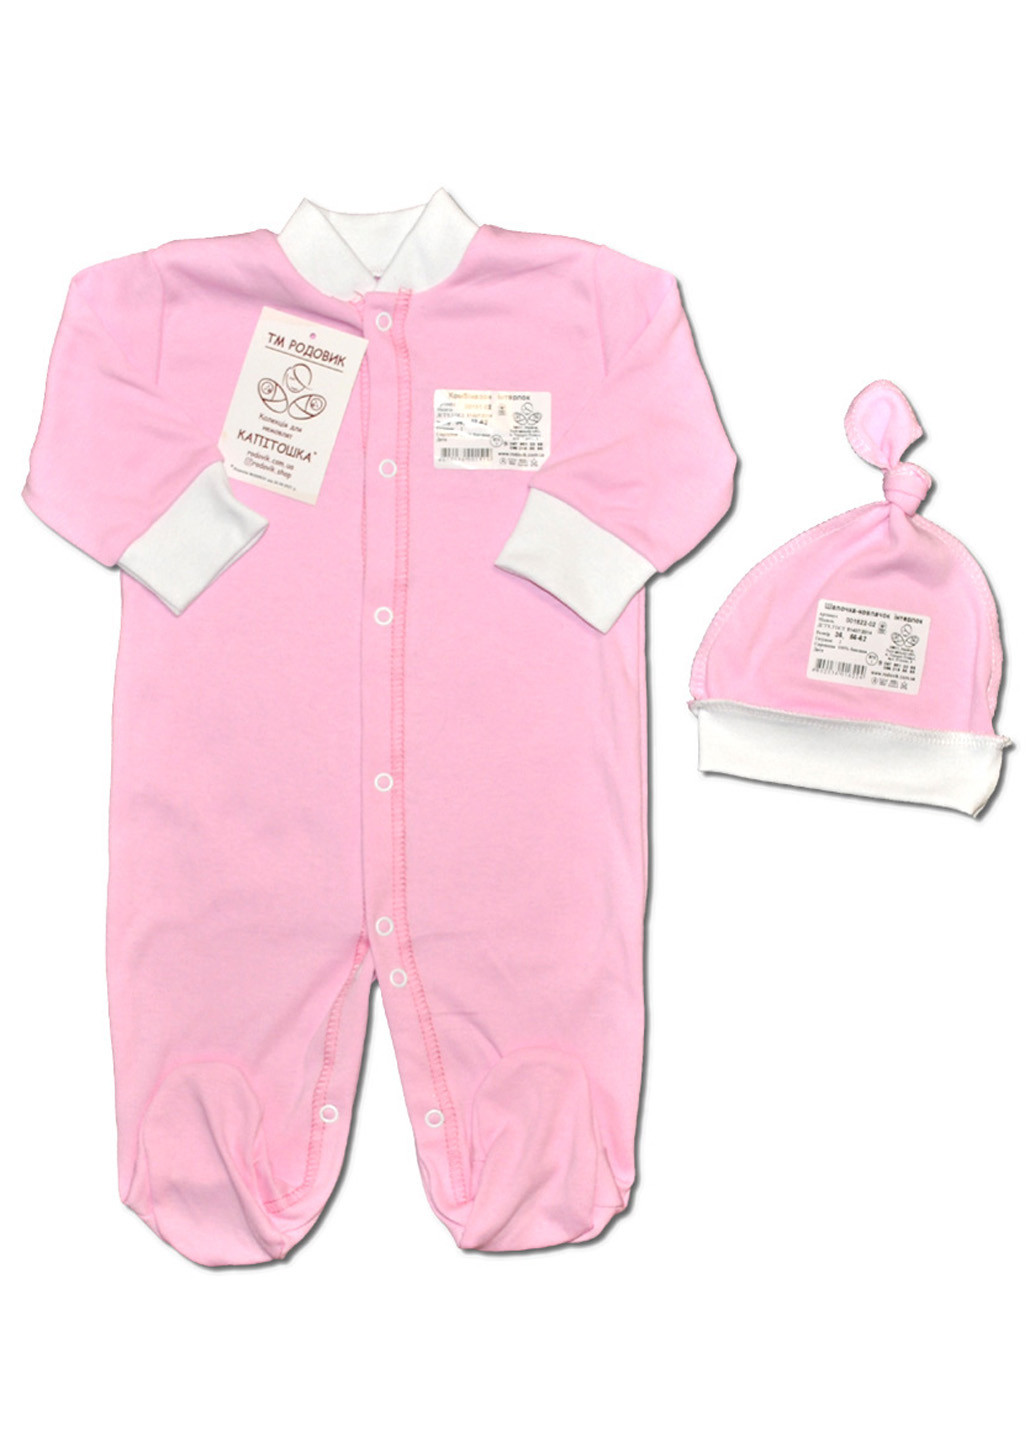 Розовый демисезонный комплект одежды для малыша человечек + чепчик колпак №3 тм колекция капитошка розовый Родовик комплект ЧШР